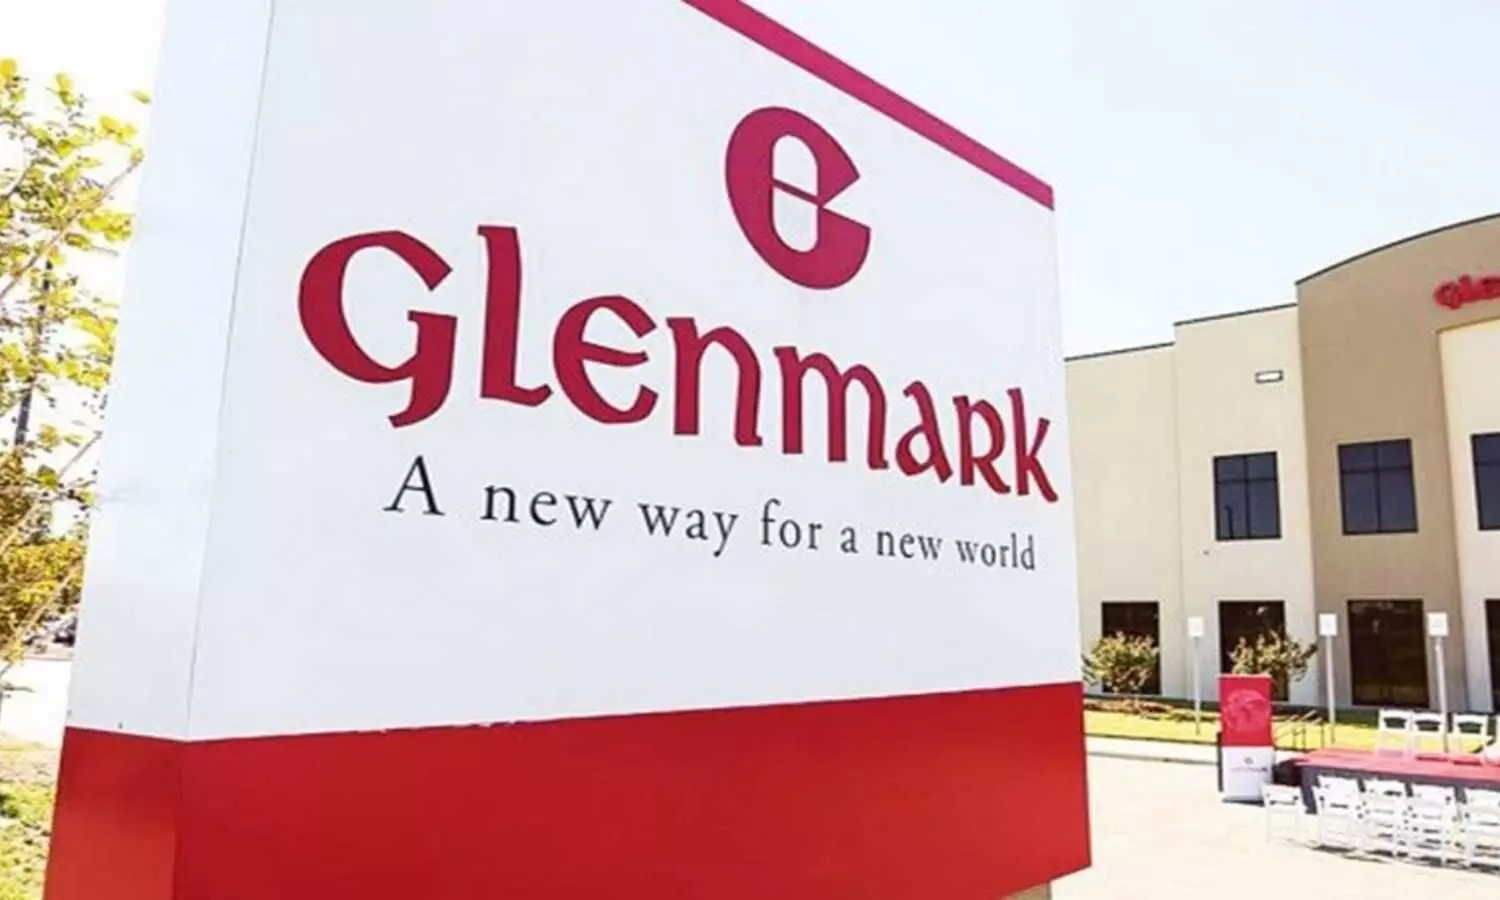 USFDA inspection: Glenmark Pharma gets warning letter for Goa facility